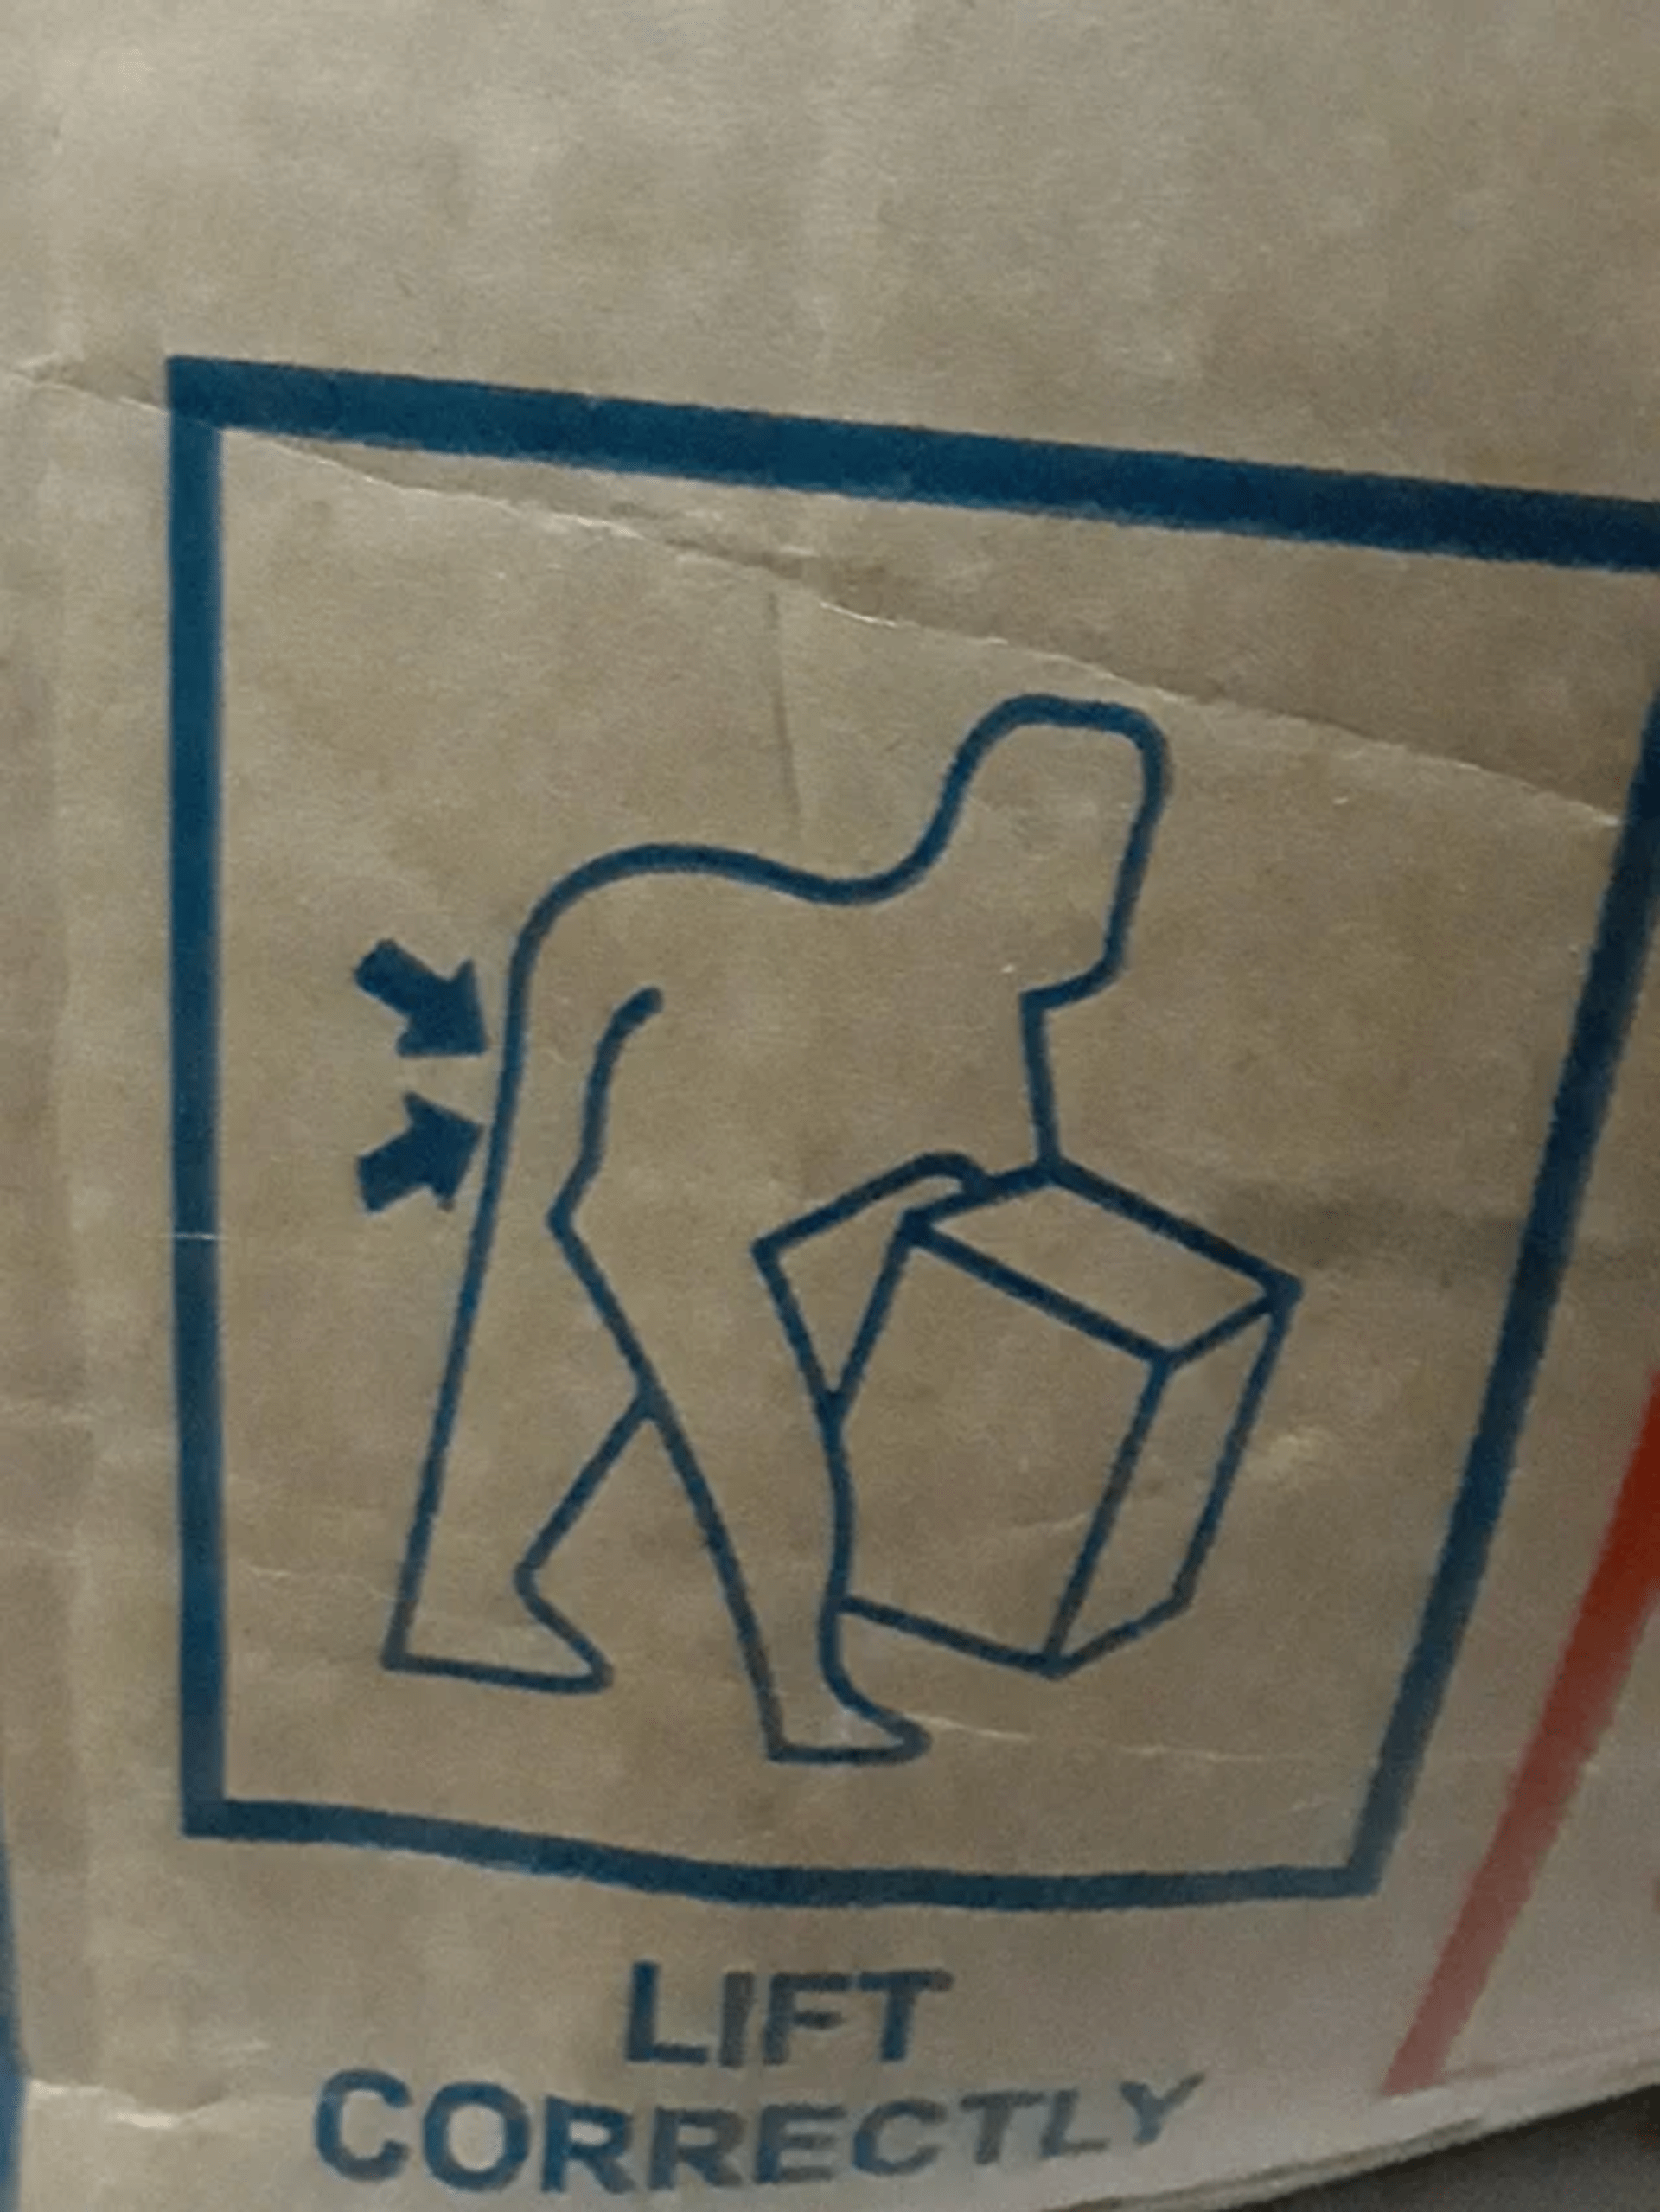 Jak že se má ta krabice vzít?